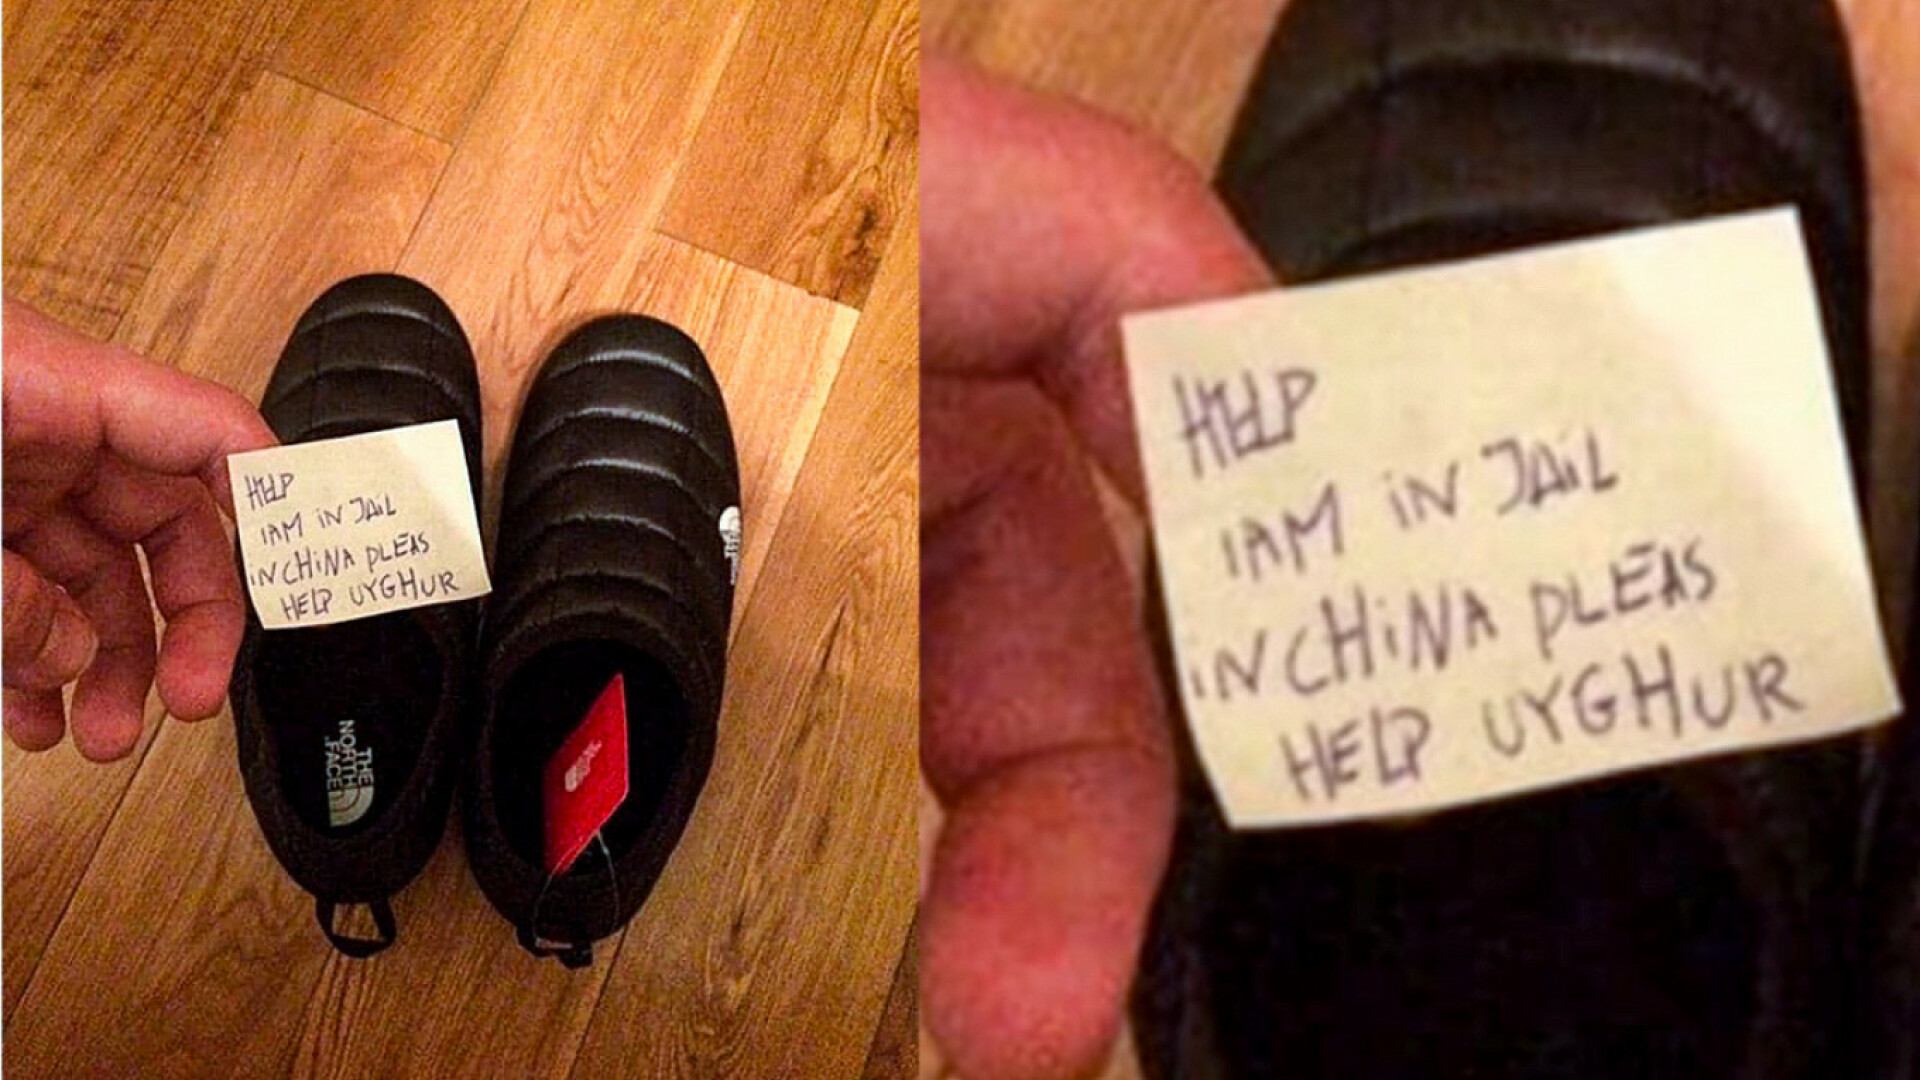 Mesajul unui uigur exploatat, descoperit într-o pereche de papuci de firmă. ”Ajutor, sunt într-o închisoare în China”